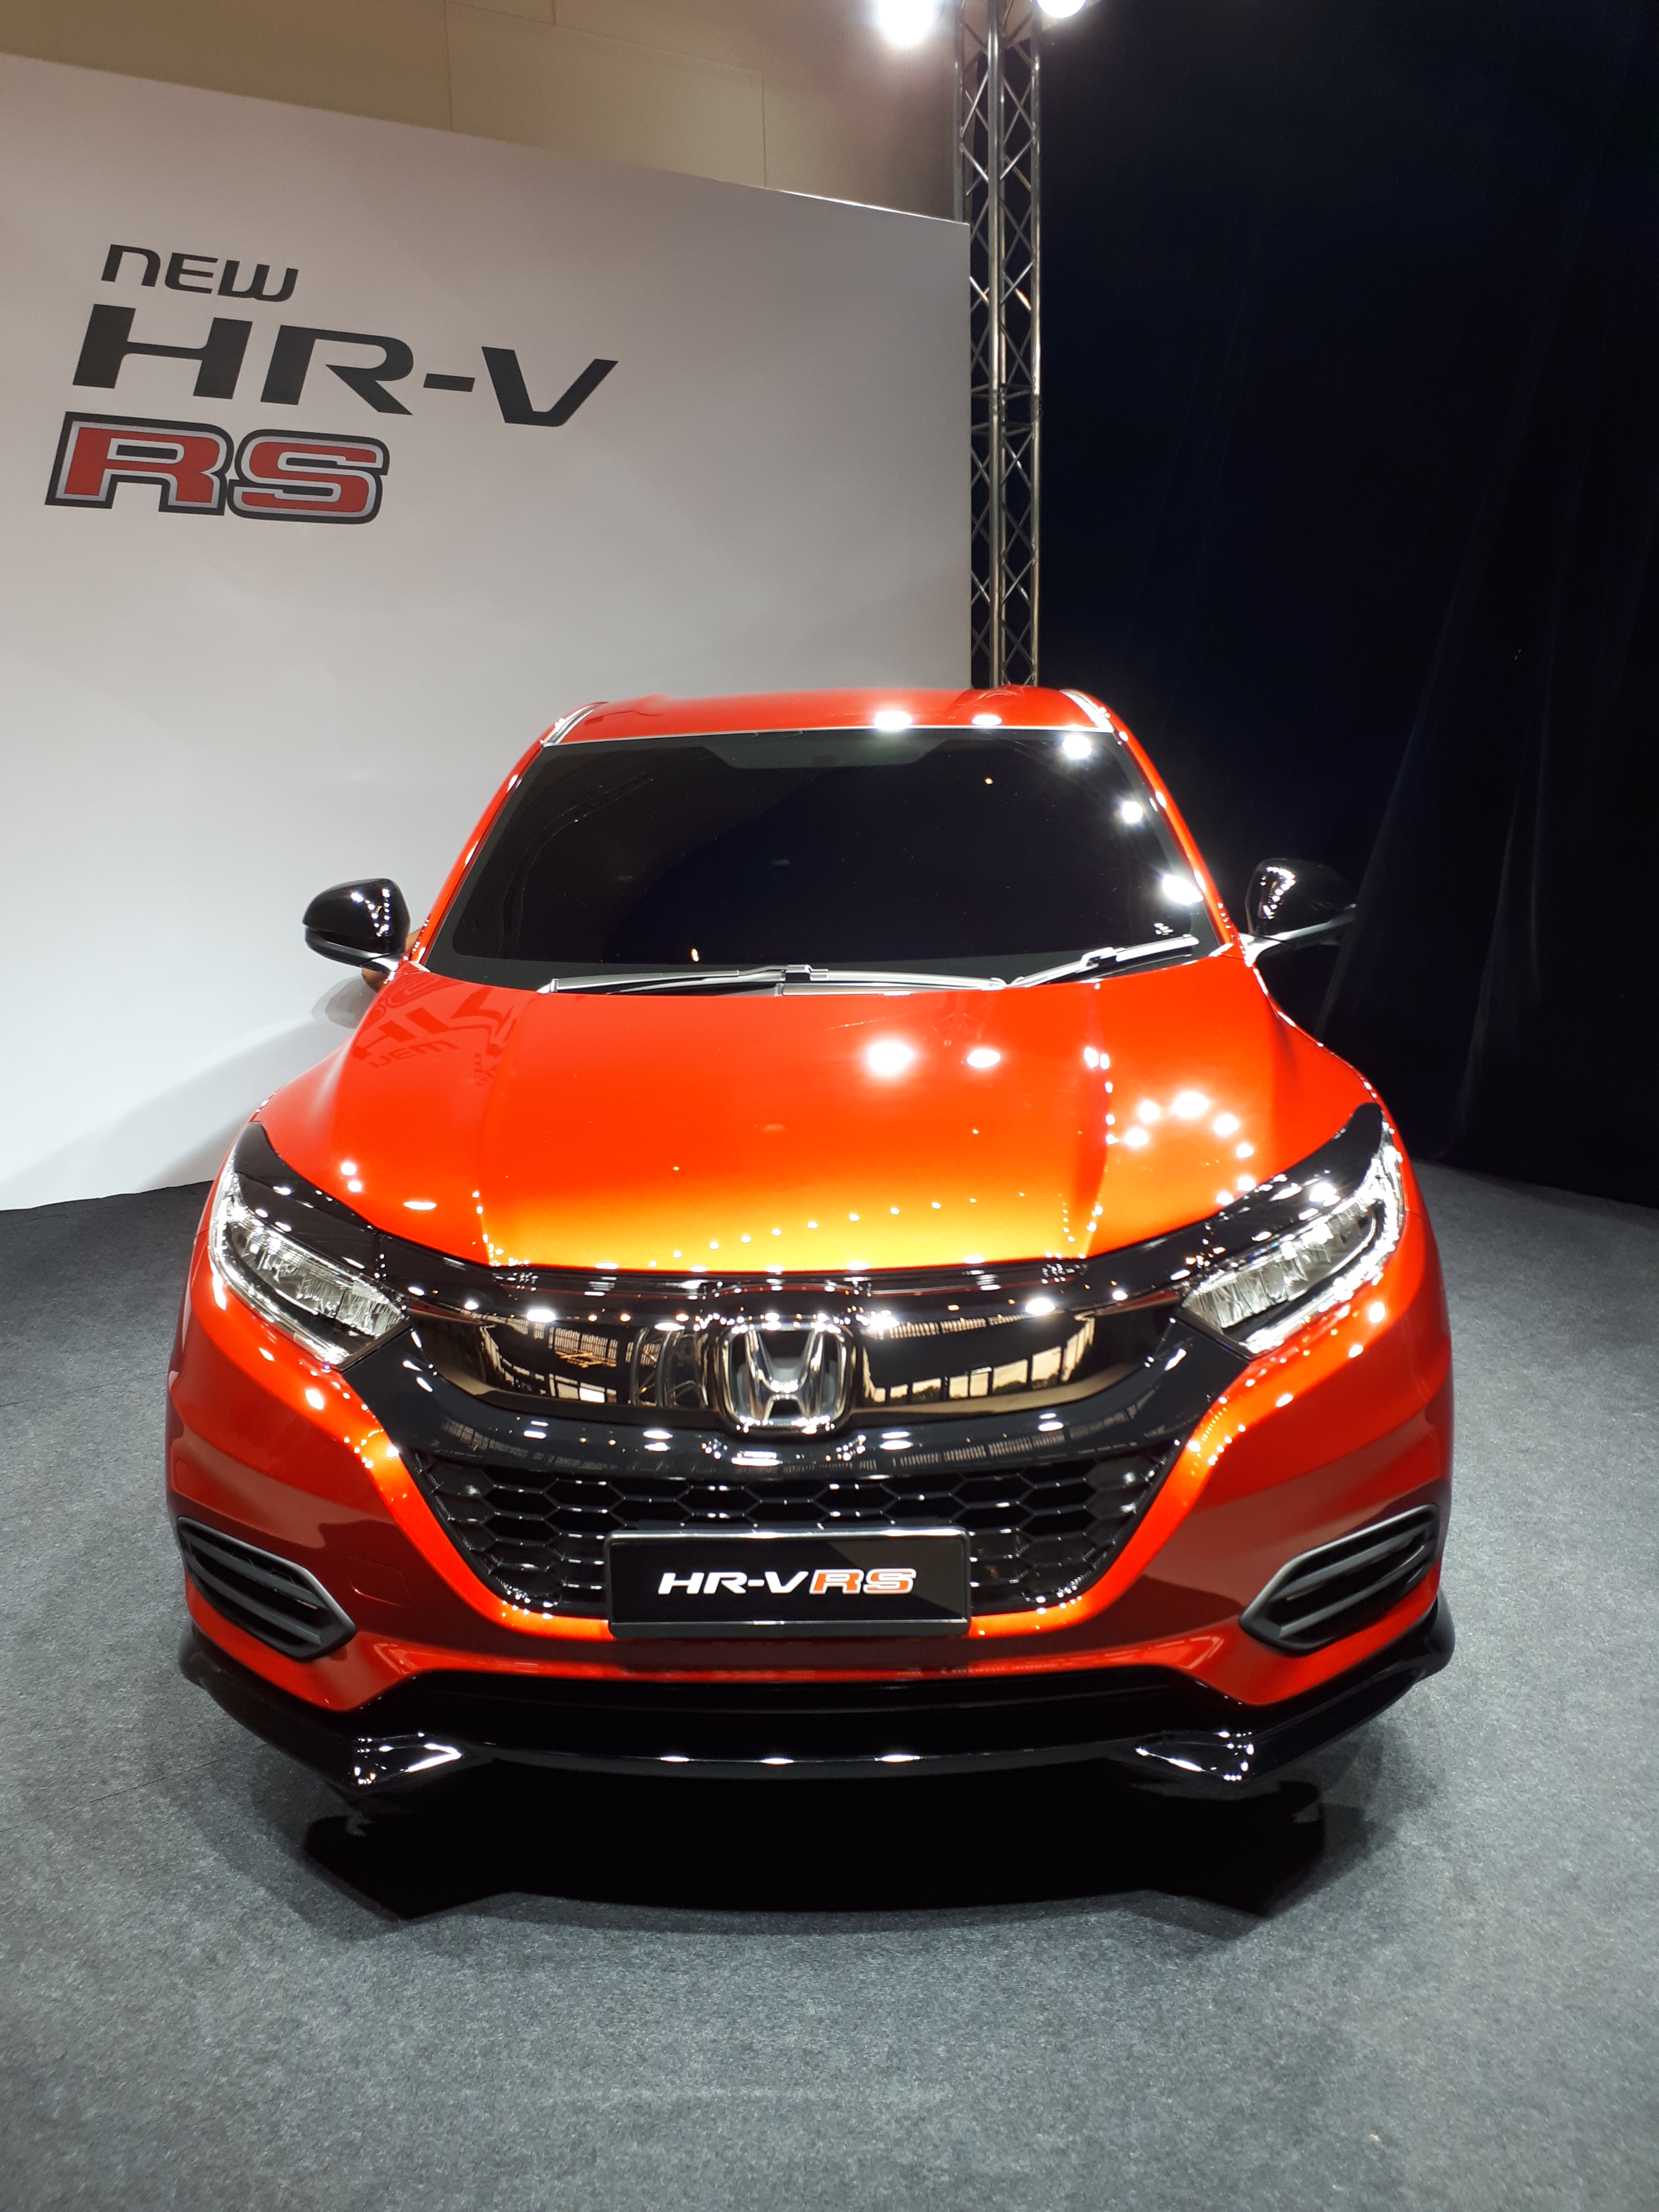 Honda HR-V hd specifications